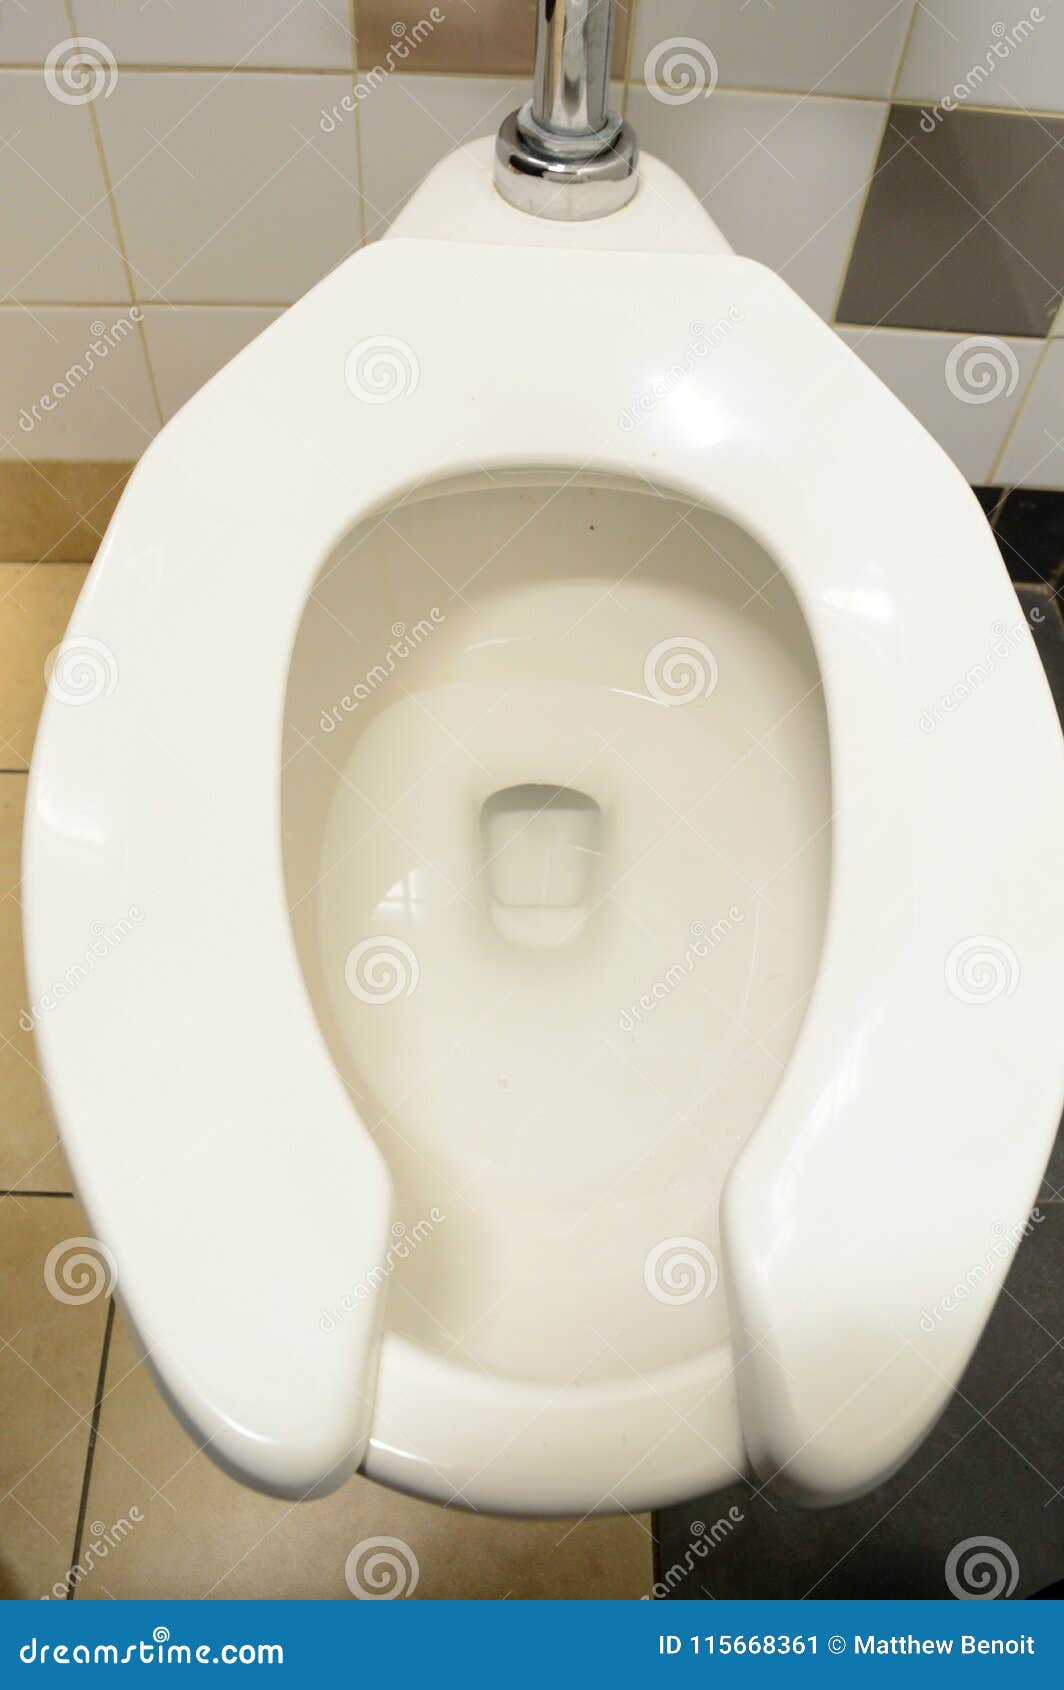 Toiletten-Toilette sauber. Obenliegendes Bild einer allgemeinen Toilettentoilette